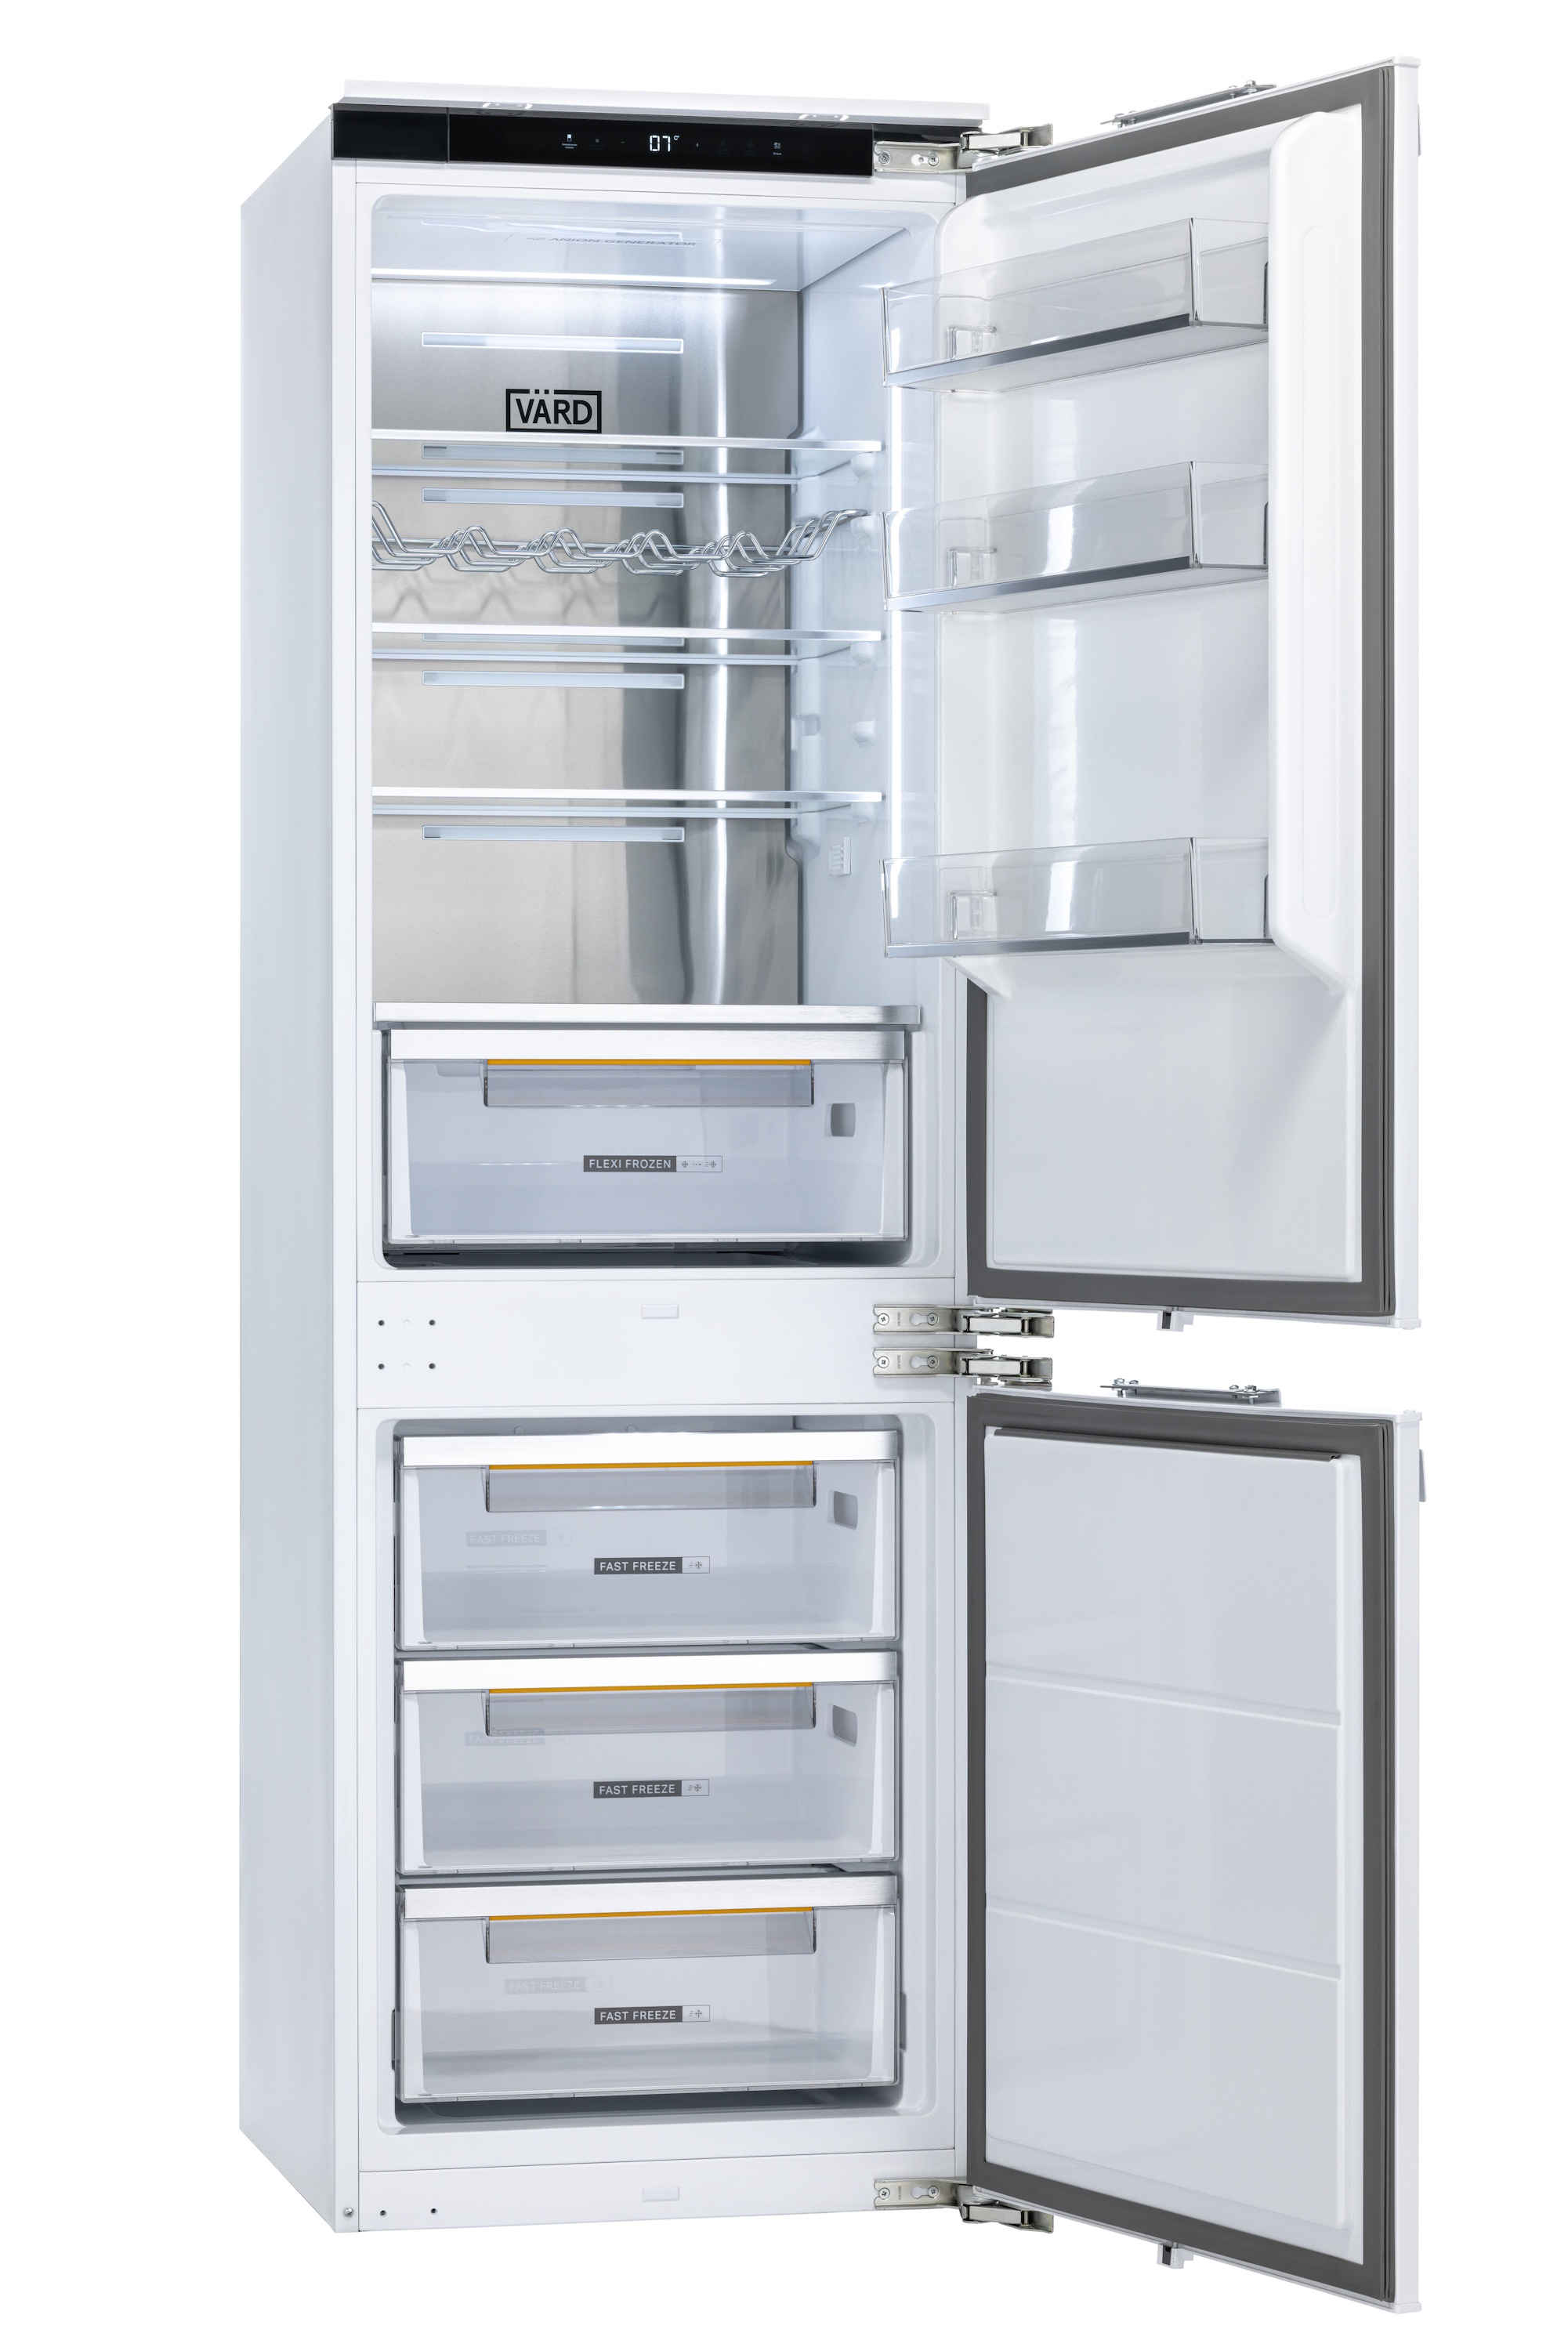 Встраиваемый холодильник Vard VIC177NI белый встраиваемый холодильник vard vic177ni белый